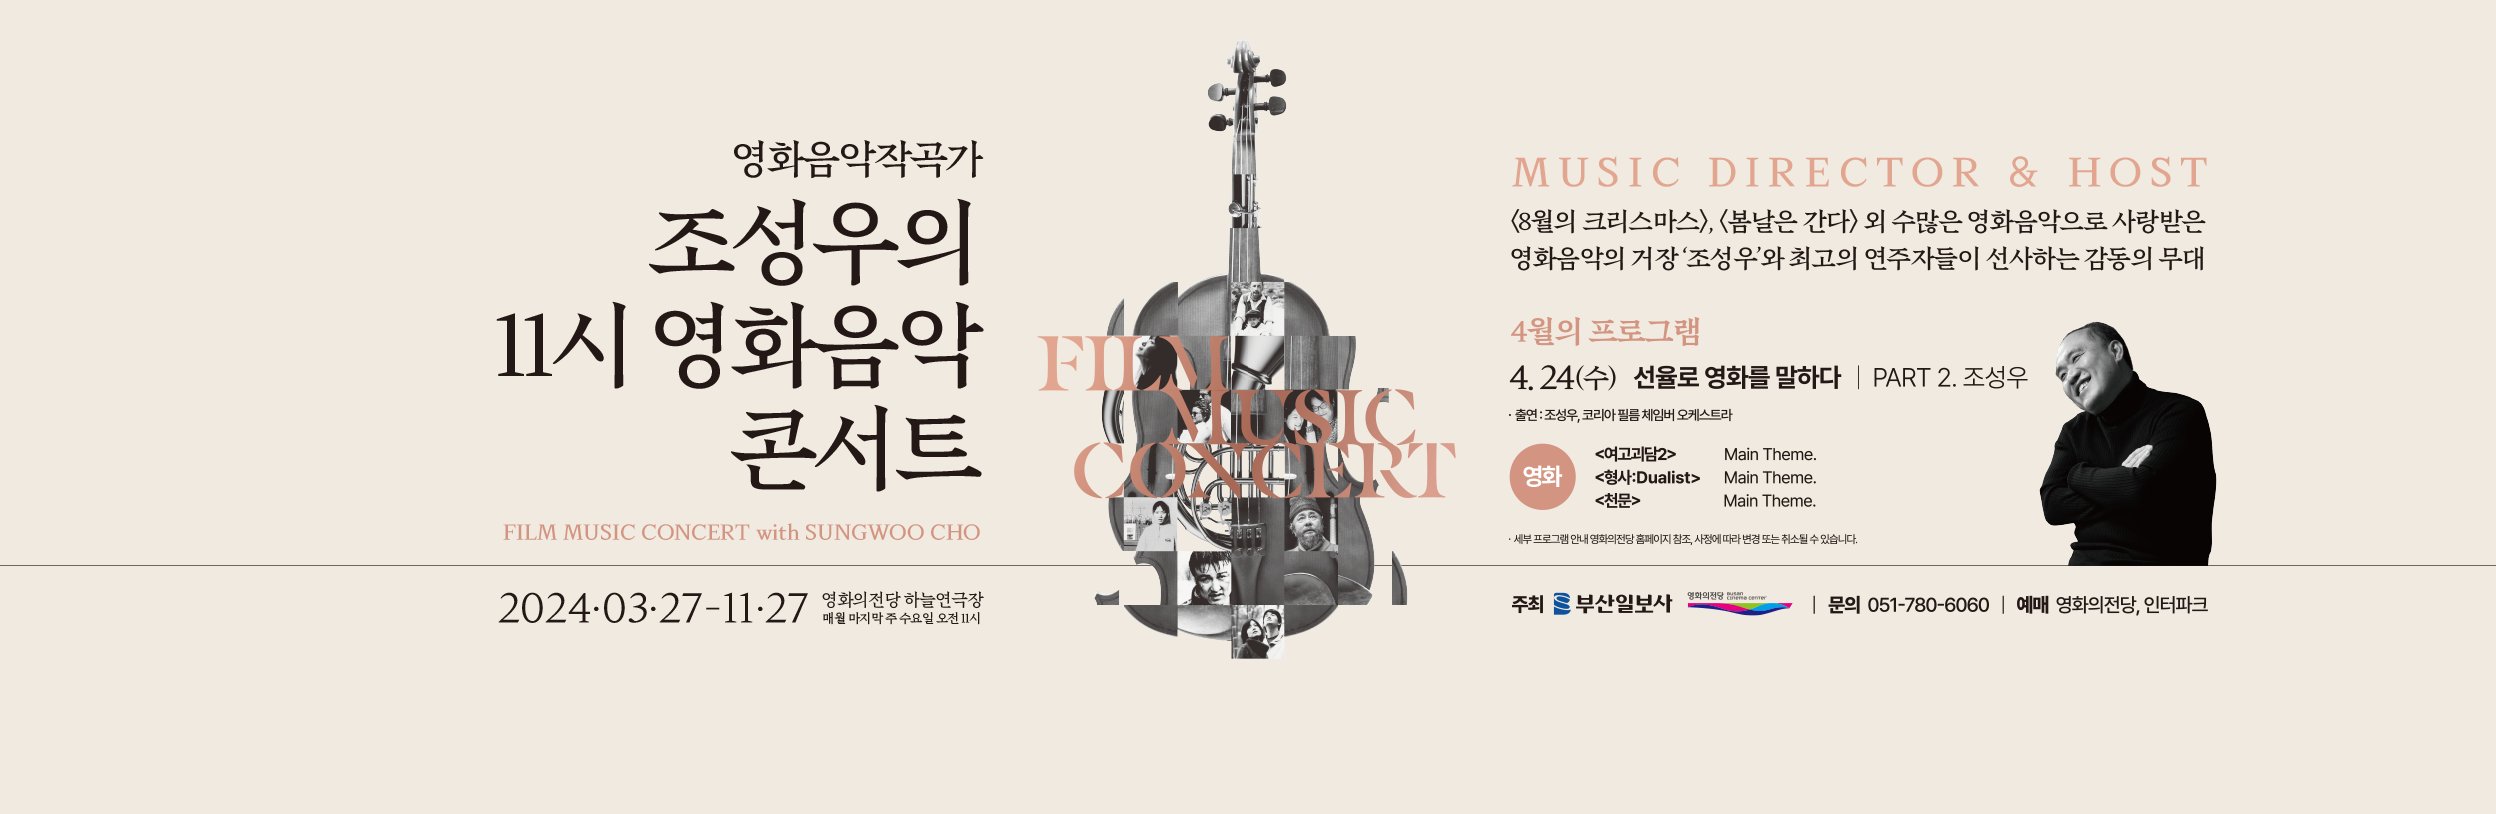 영화음악작곡가 조성우의 11시 영화음악콘서트 2024.03.27-11.27